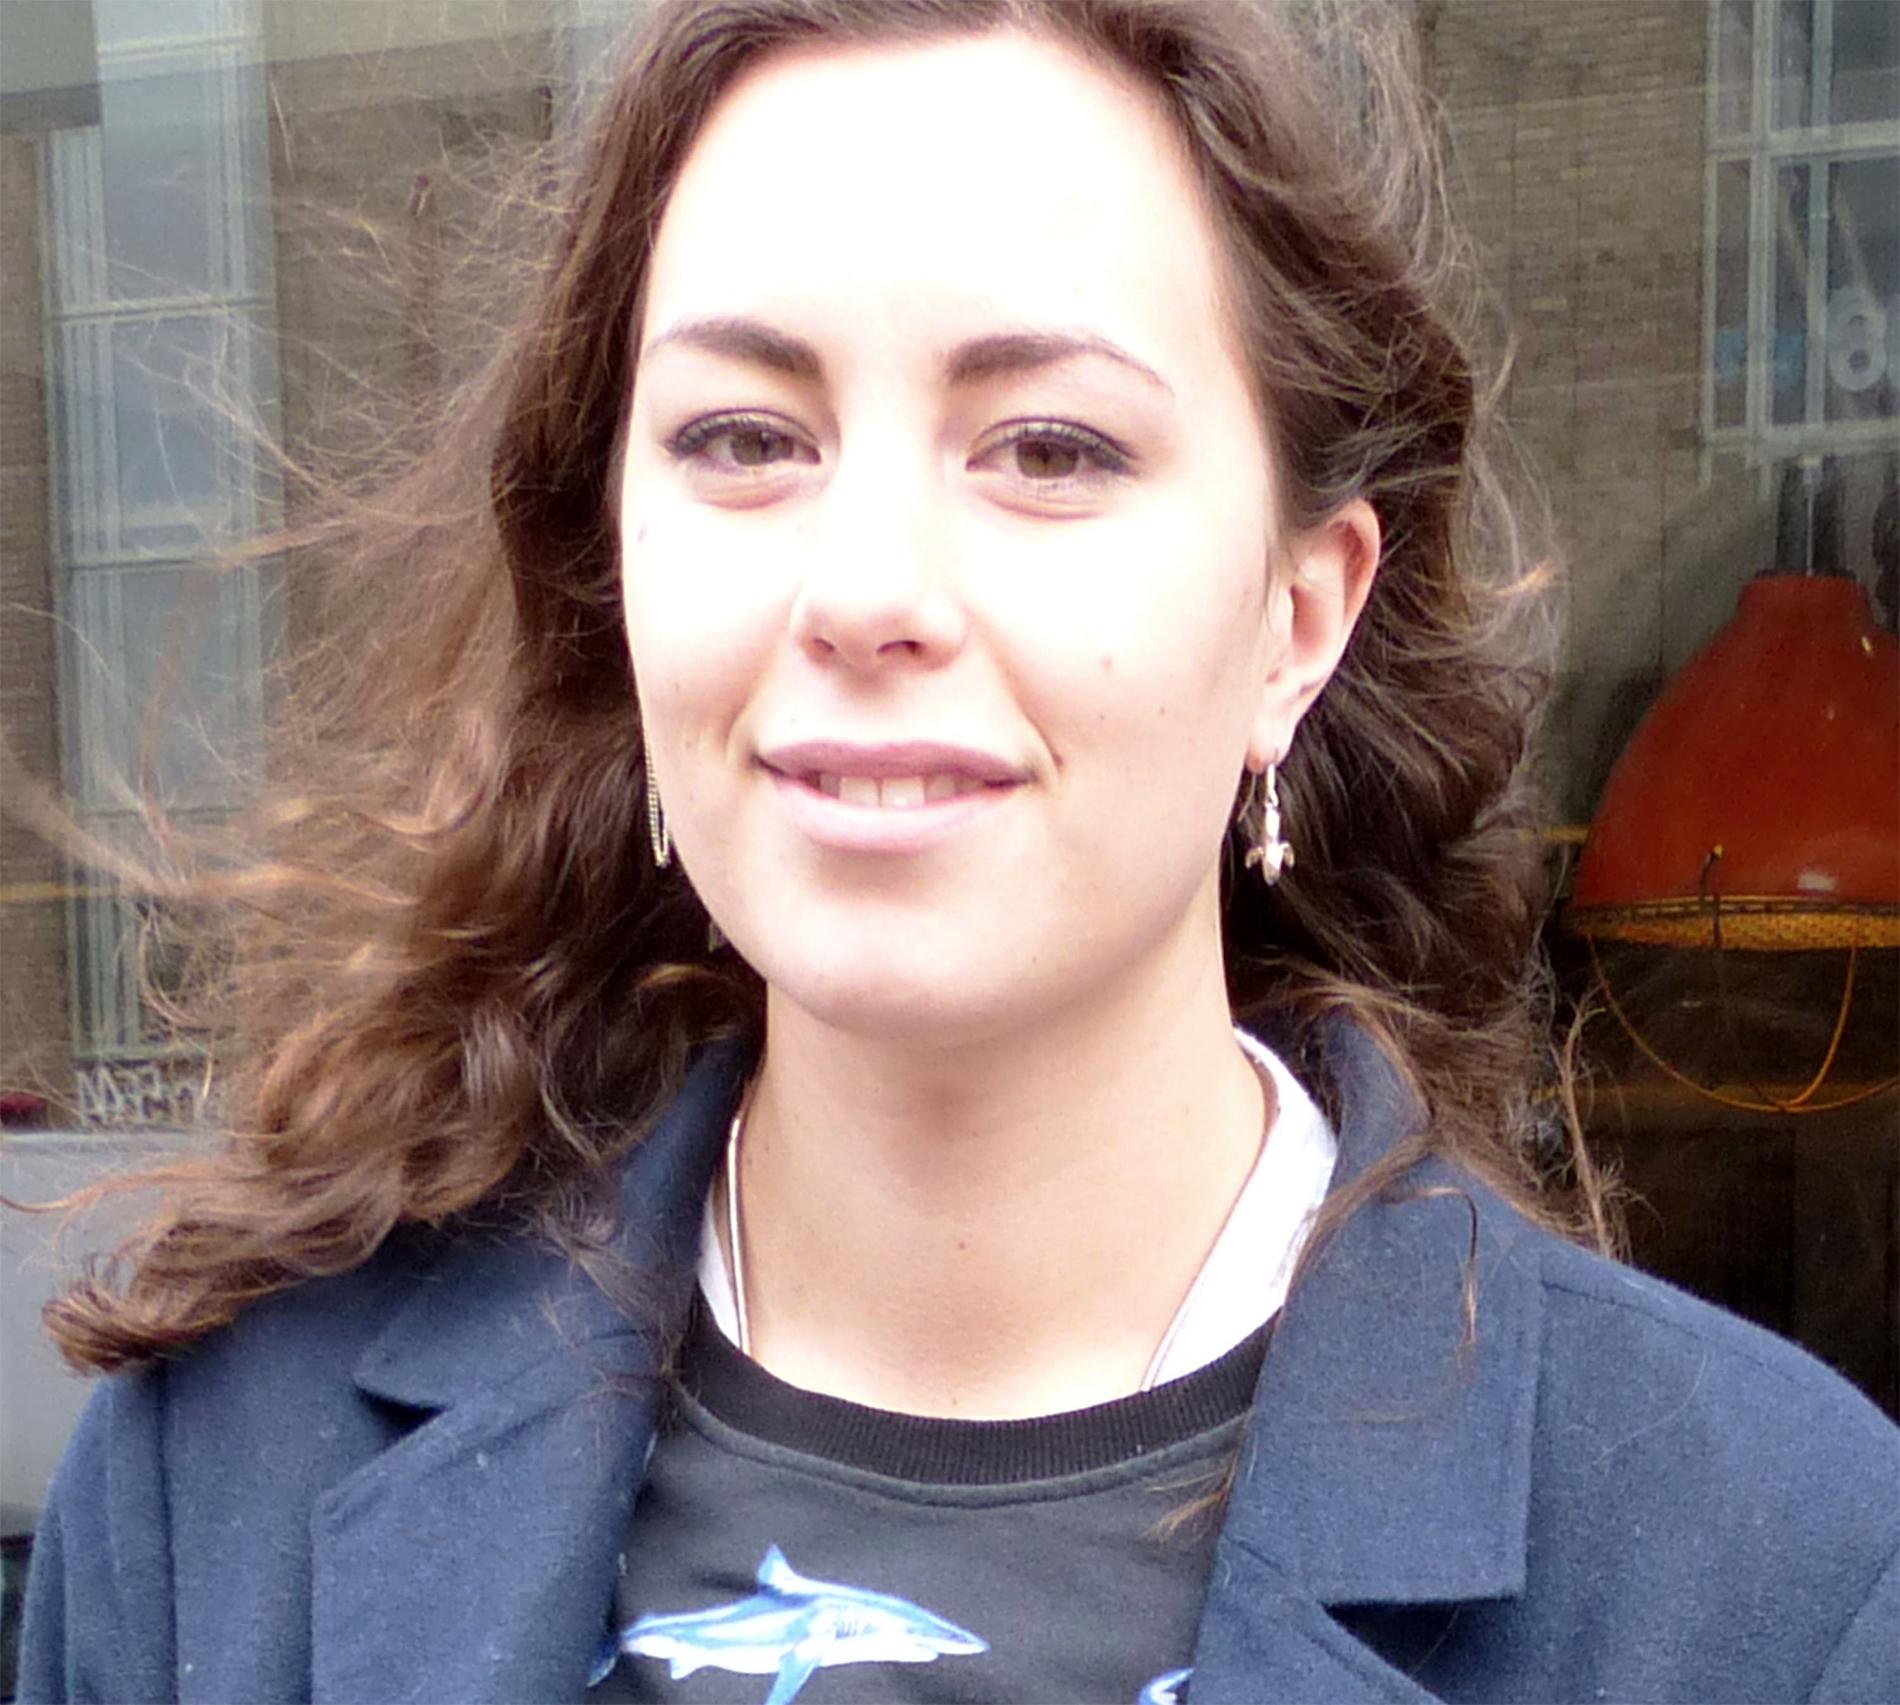 Hanna Lidström är en av deltagarna i TV3:s castingprocess ”Förspelet” för Paradise Hotel – och kulturministerns egna favorit till sexsåpan.